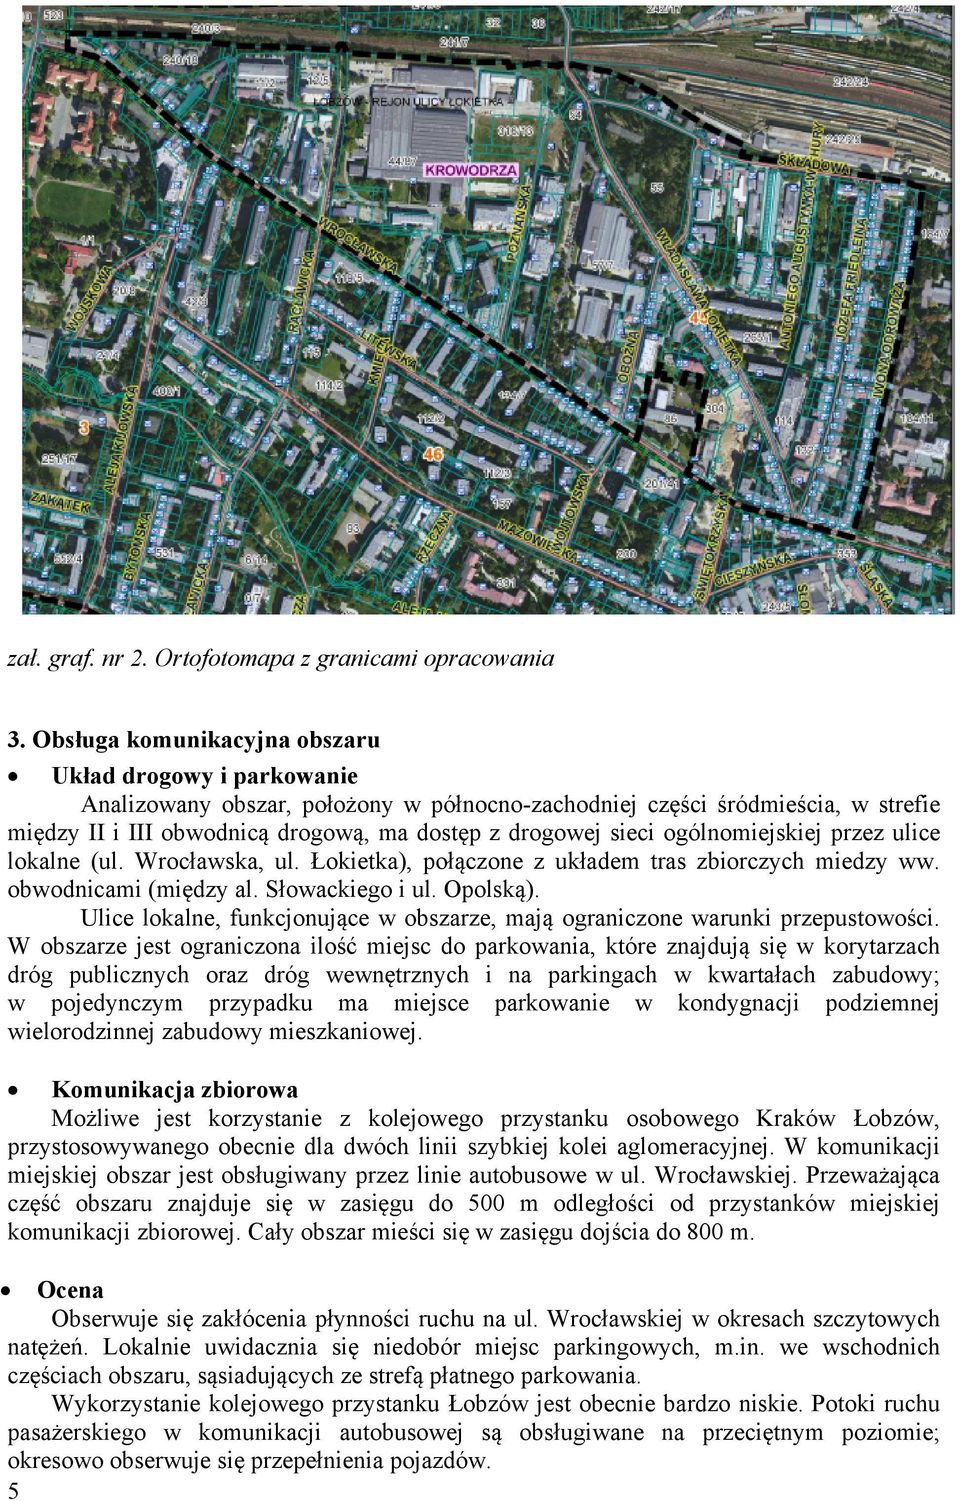 ogólnomiejskiej przez ulice lokalne (ul. Wrocławska, ul. Łokietka), połączone z układem tras zbiorczych miedzy ww. obwodnicami (między al. Słowackiego i ul. Opolską).